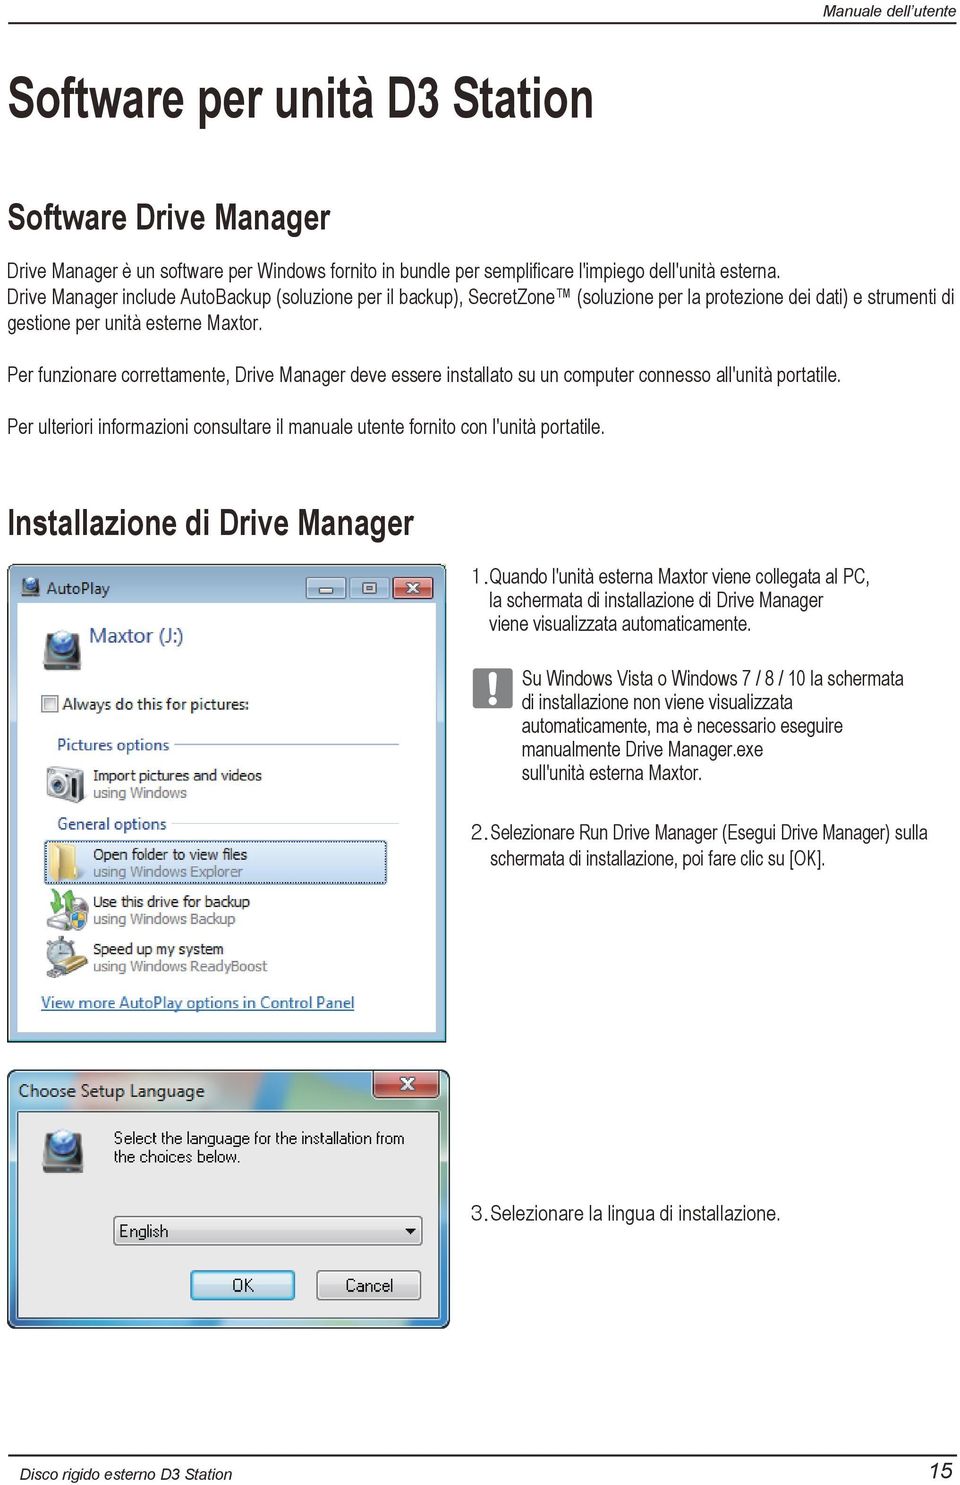 Per funzionare correttamente, Drive Manager deve essere installato su un computer connesso all'unità portatile. Per ulteriori informazioni consultare il manuale utente fornito con l'unità portatile.